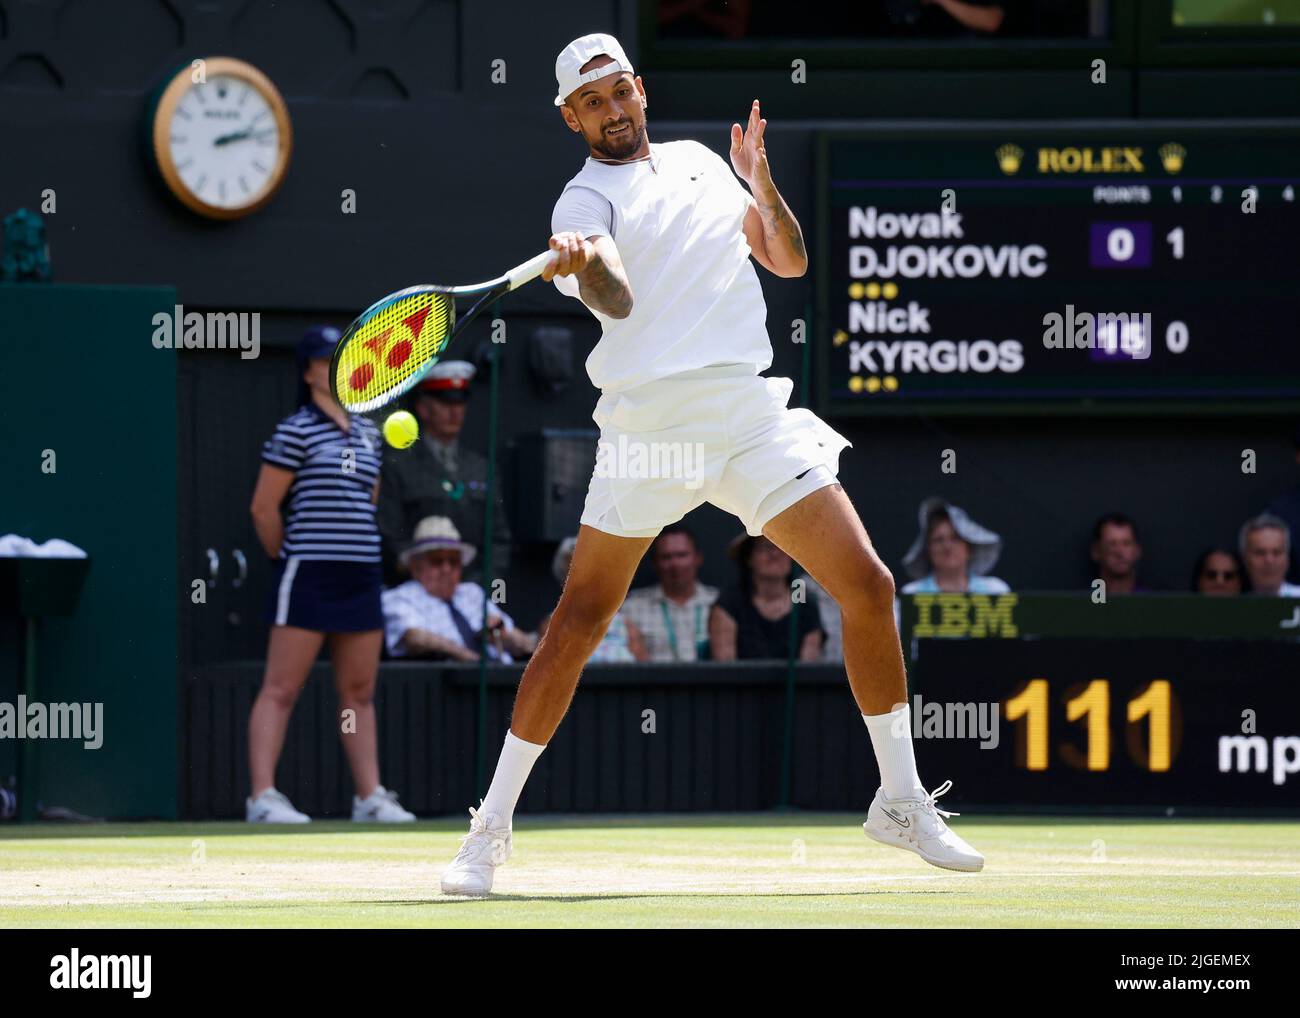 Wimbledon, Gran Bretaña 10th. Julio, 2022. El tenista australiano Nick Kyrgios en acción en el Campeonato de Wimbledon 2022 el domingo 10 de julio de 2022., © Juergen Hasenkopf / Alamy Live News Foto de stock